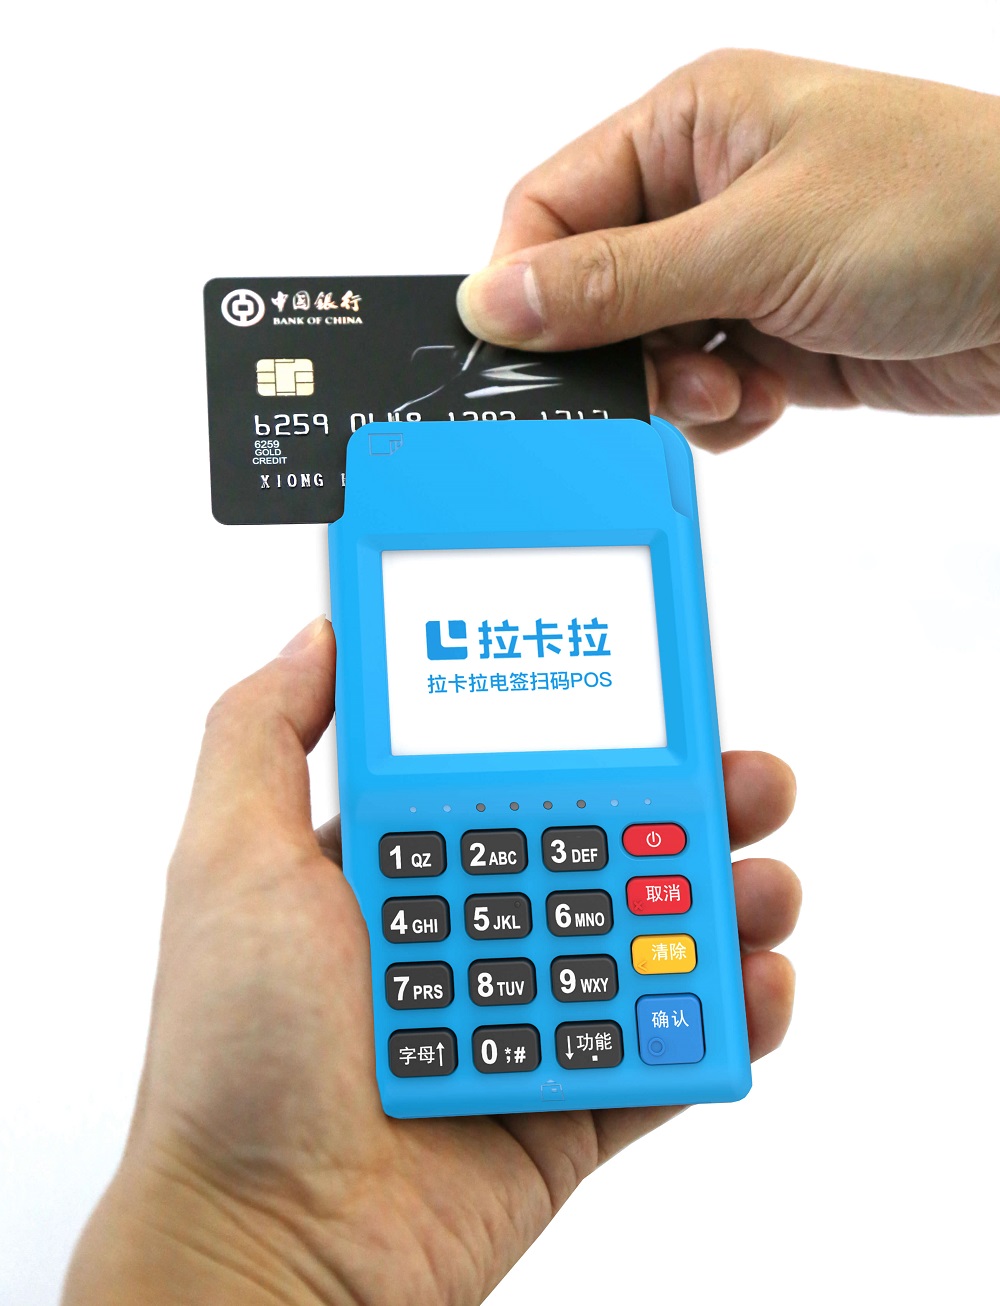 信用卡刷卡显示金额太大什么意思,刷卡时显示金额太大